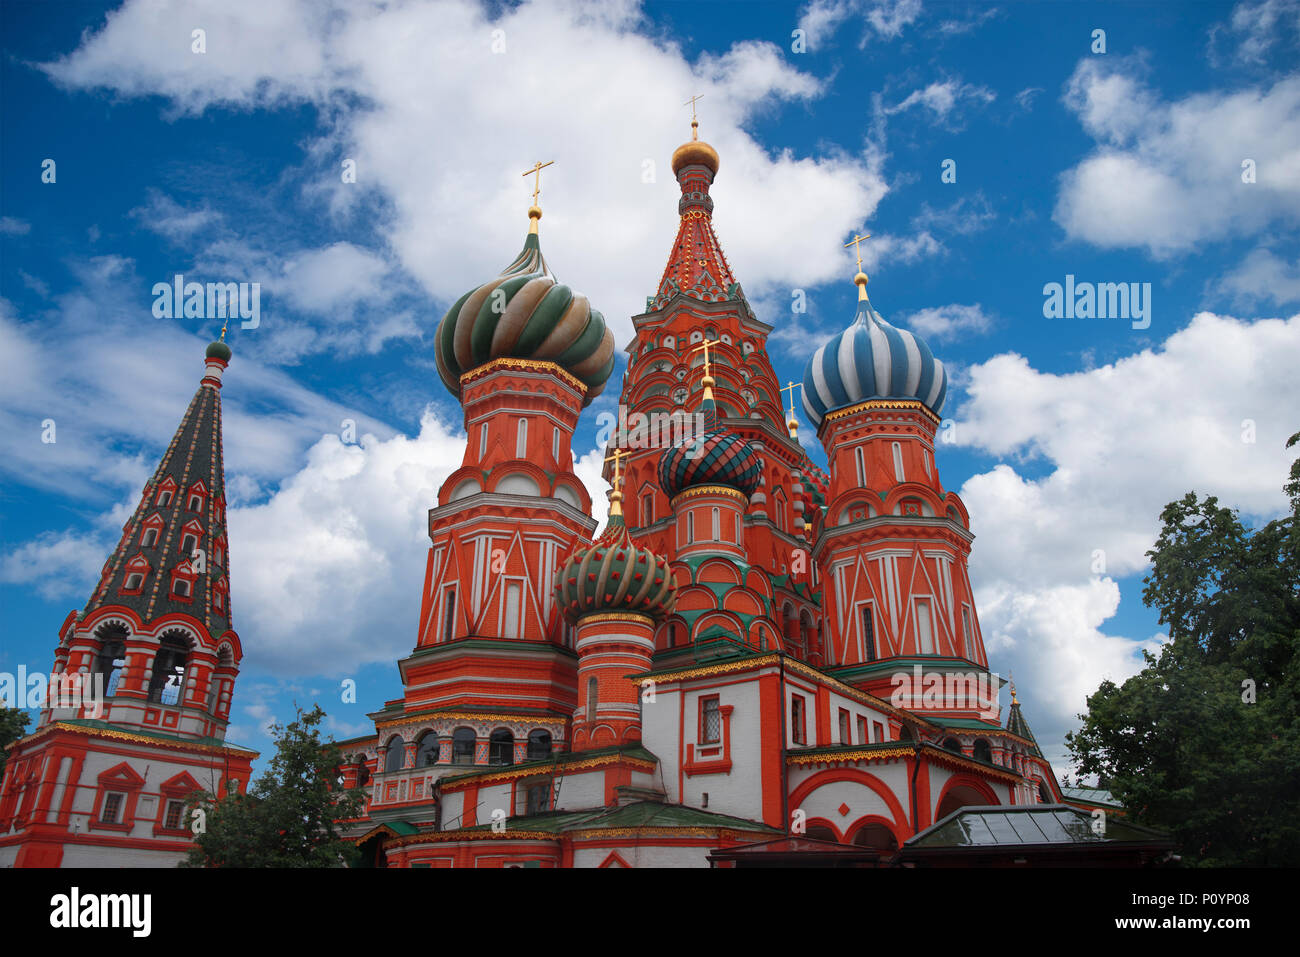 Basilius Kathedrale - eine orthodoxe Kirche auf dem Roten Platz in Moskau, eine bekannte Denkmal der russischen Architektur. Stockfoto